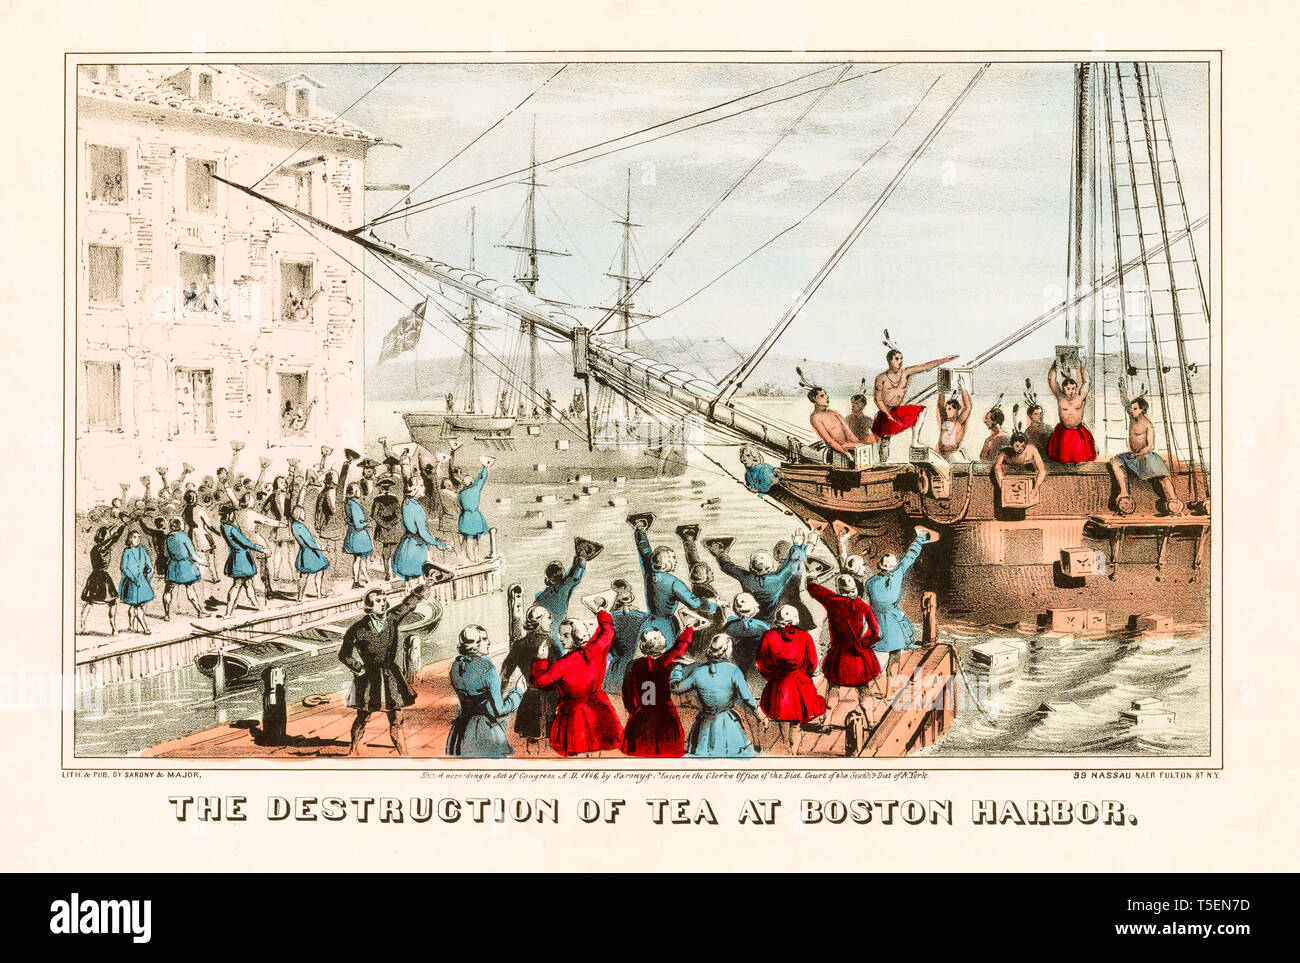 'La destruction de plateau au Boston Harbor', gravure colorée à la main de la Boston Tea Party, 16 décembre 1773, réalisé en 1846 Banque D'Images